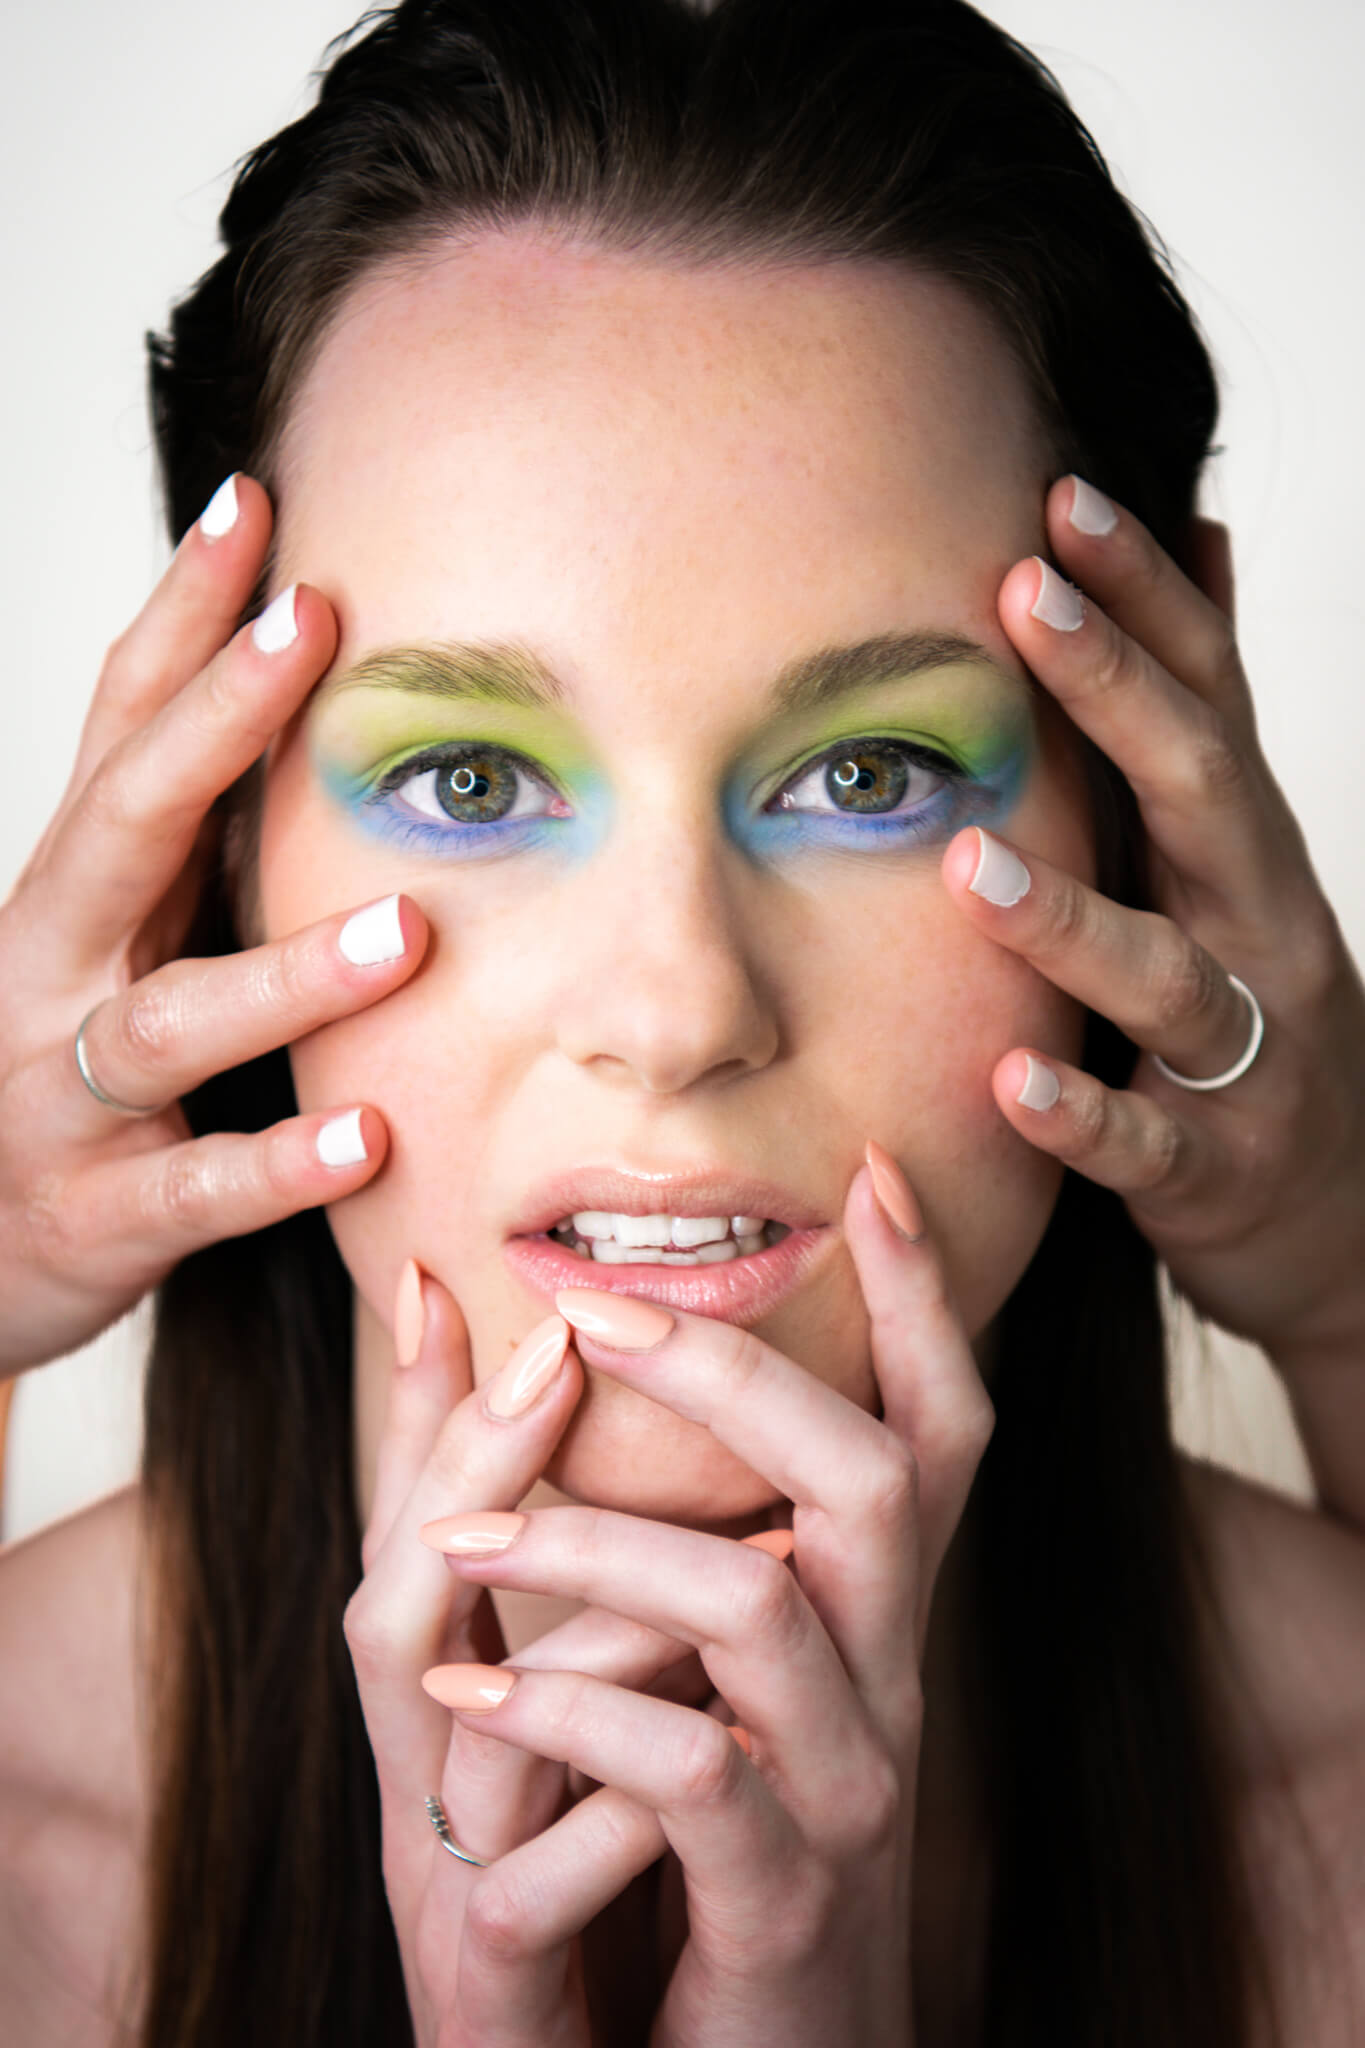 Dunkelhaarige, junge Frau mit grün-blauem Augenmakeup mit vier Händen auf ihrem Gesicht